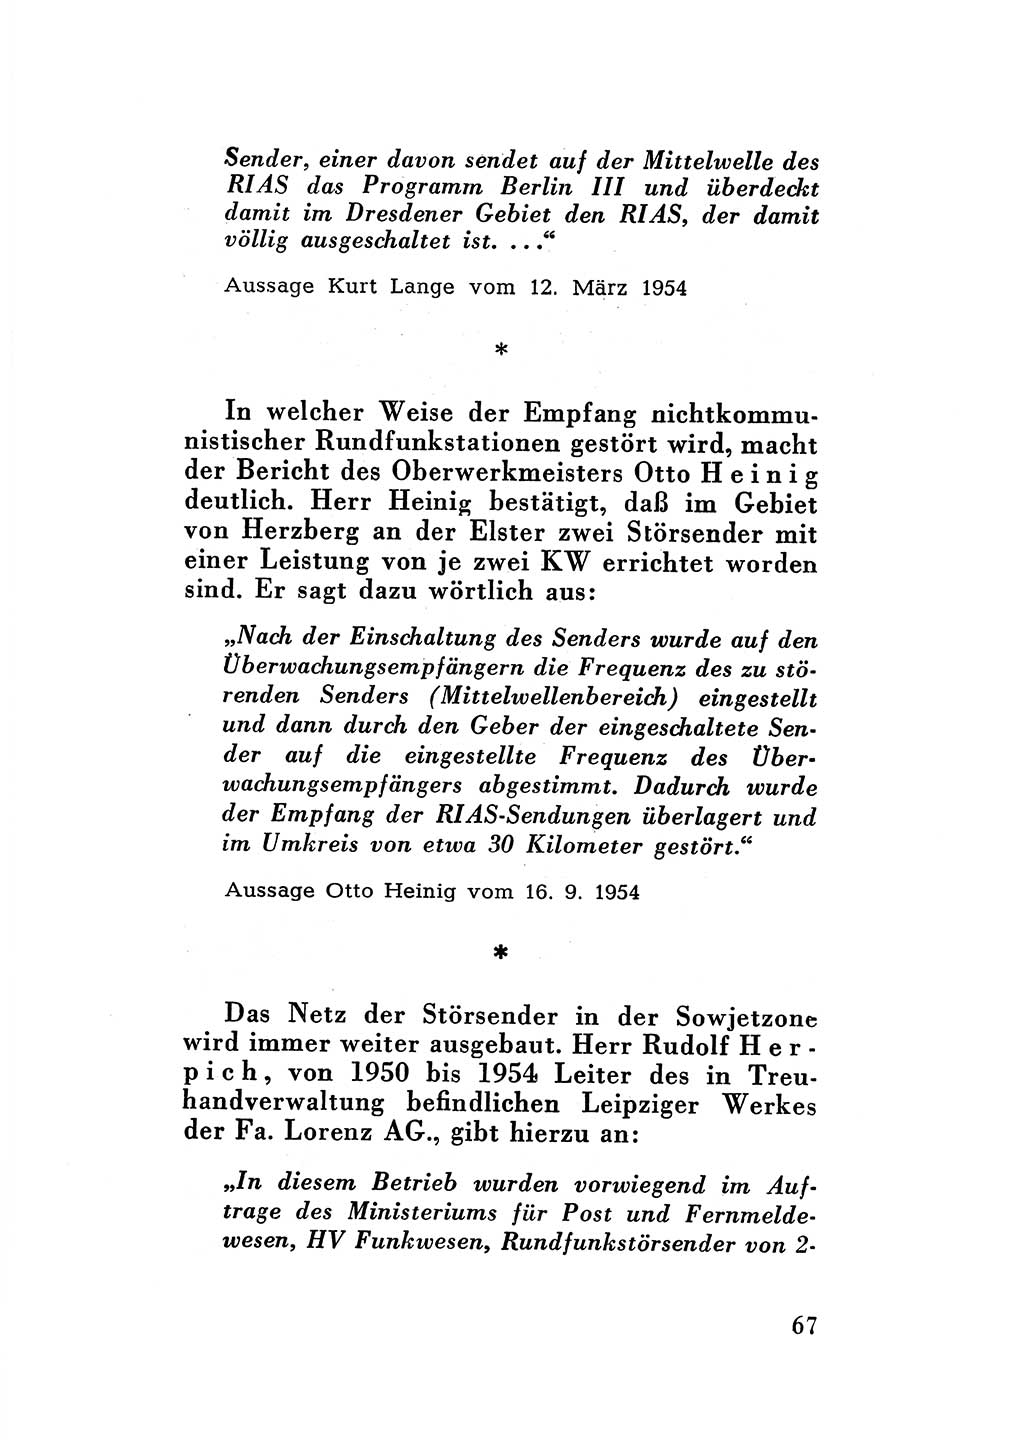 Katalog des Unrechts, Untersuchungsausschuß Freiheitlicher Juristen (UfJ) [Bundesrepublik Deutschland (BRD)] 1956, Seite 67 (Kat. UnR. UfJ BRD 1956, S. 67)